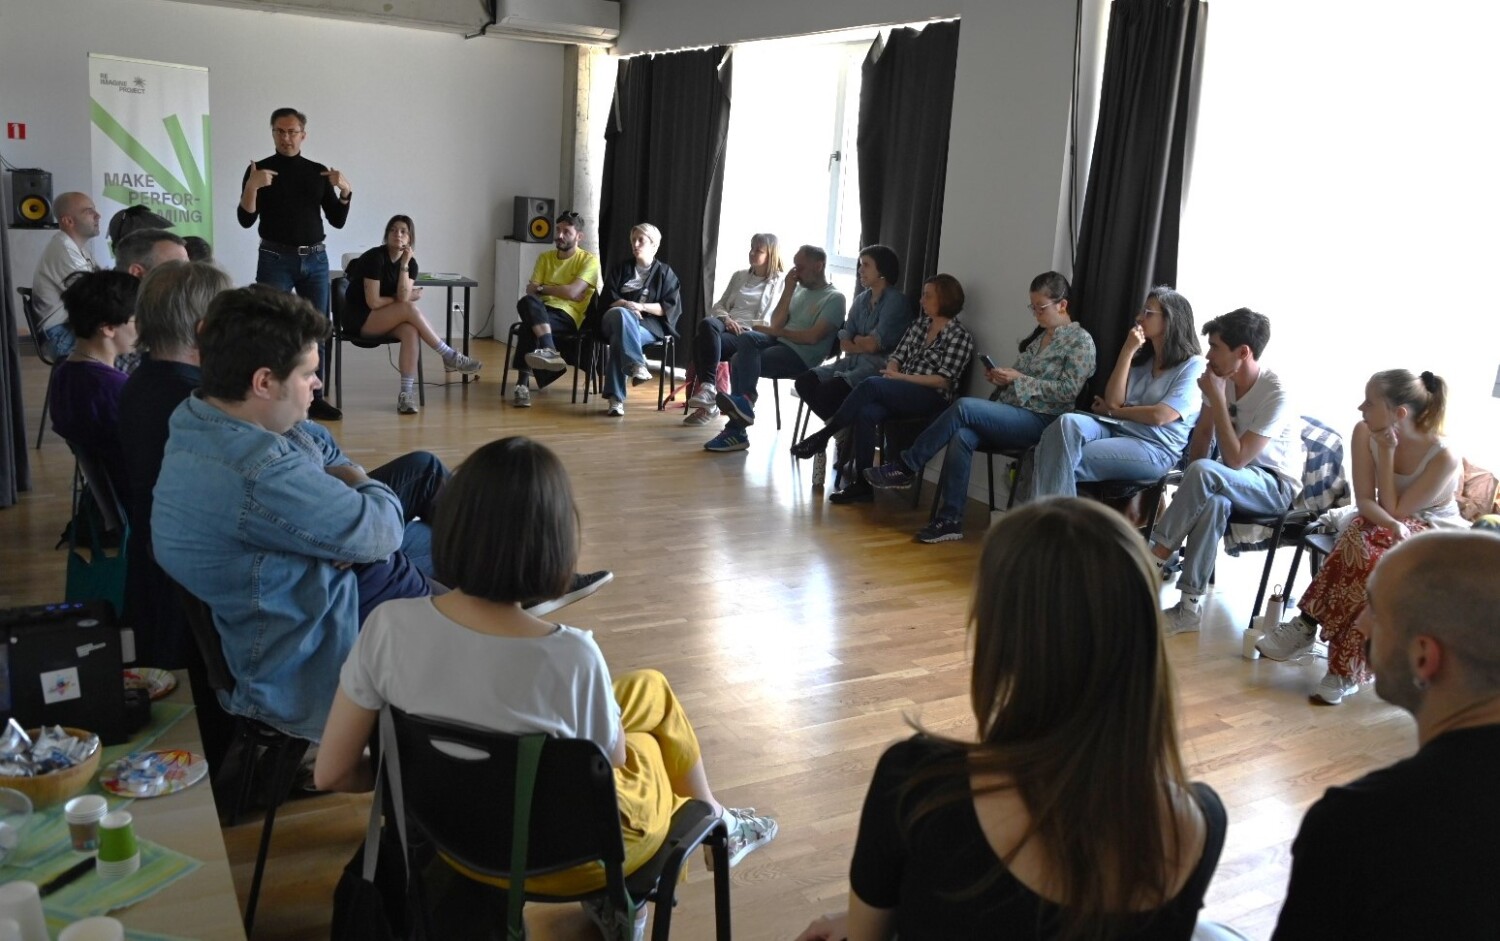 Първата европейска творческа резиденция RE-IMAGINE Green ще се състои в София през април